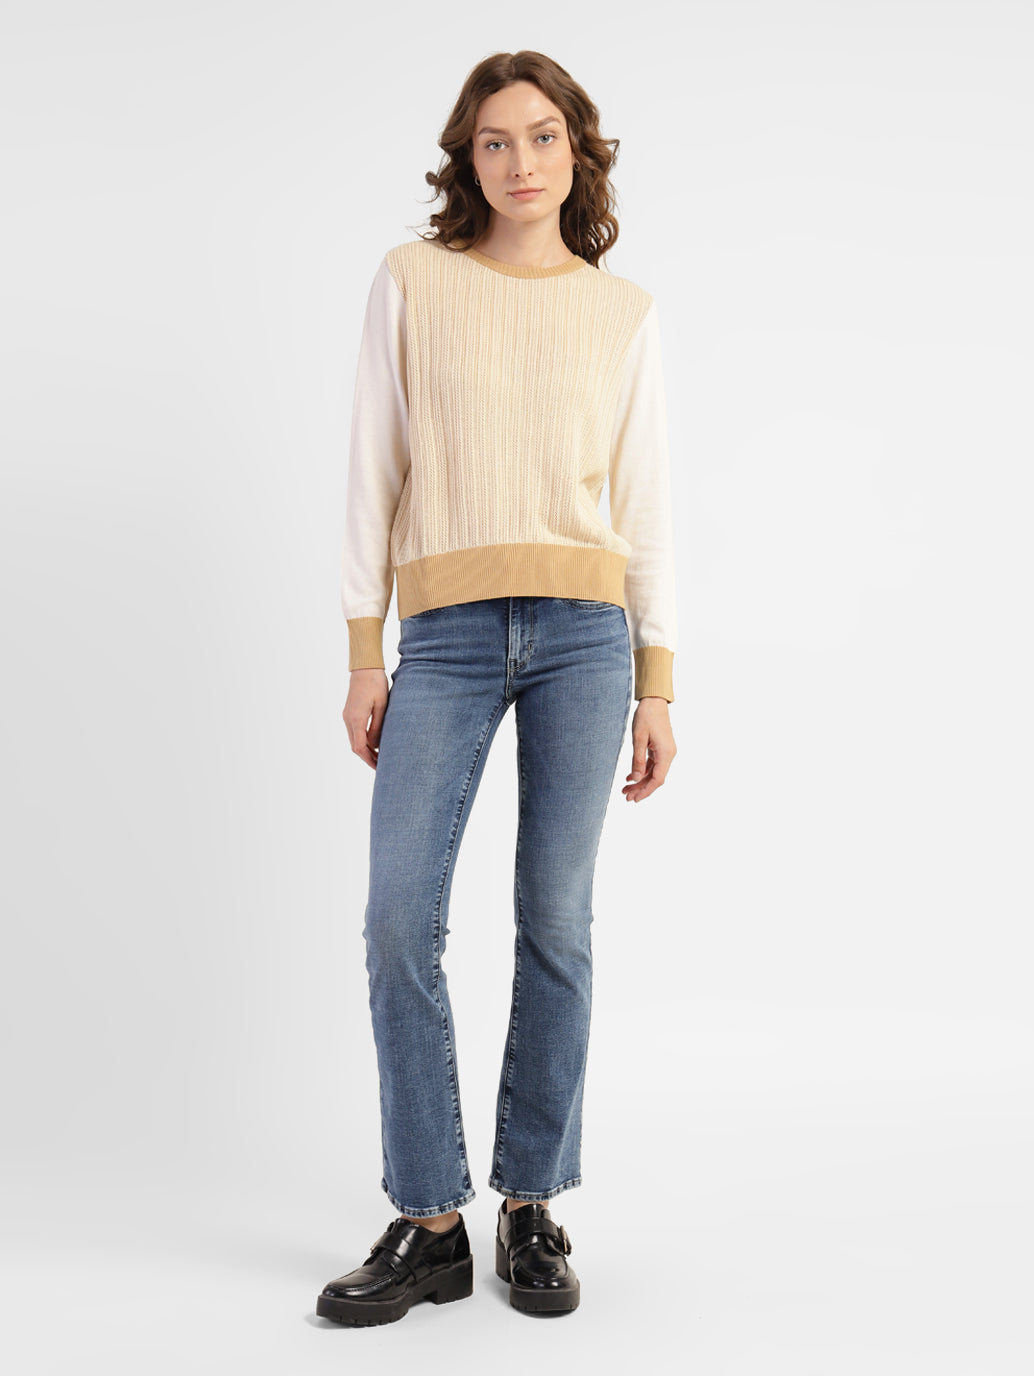 Women's Self Design Round Neck Sweater